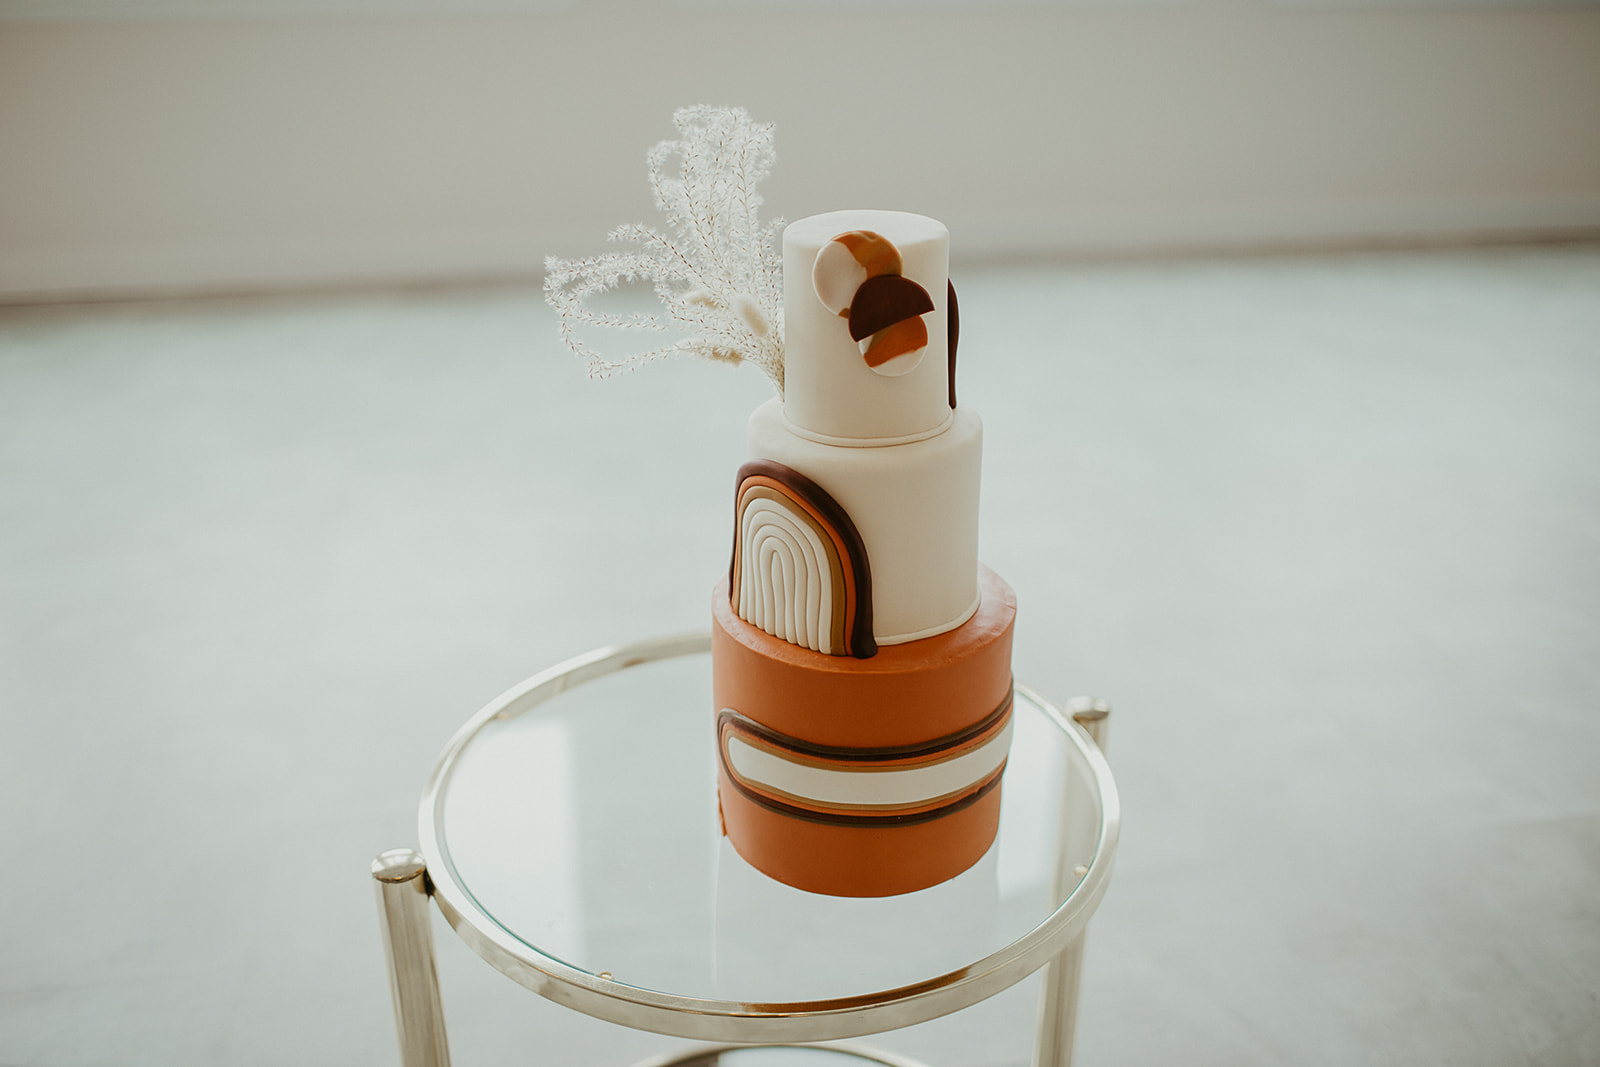 3-tiered fondant wedding cake in amber, boho wedding cake inspiration